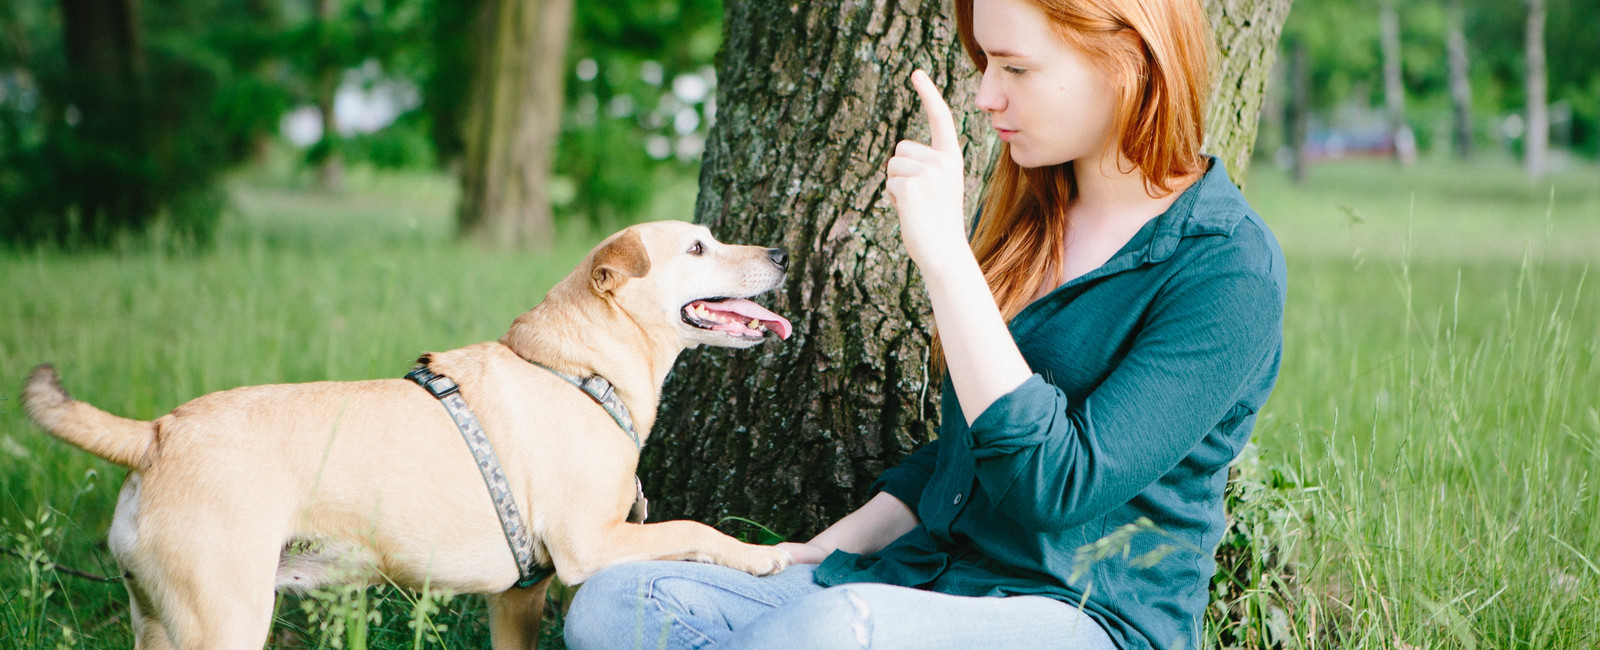 Junge Frau mit roten Haaren sitzt im Gras und spielt mit blondem Hund.